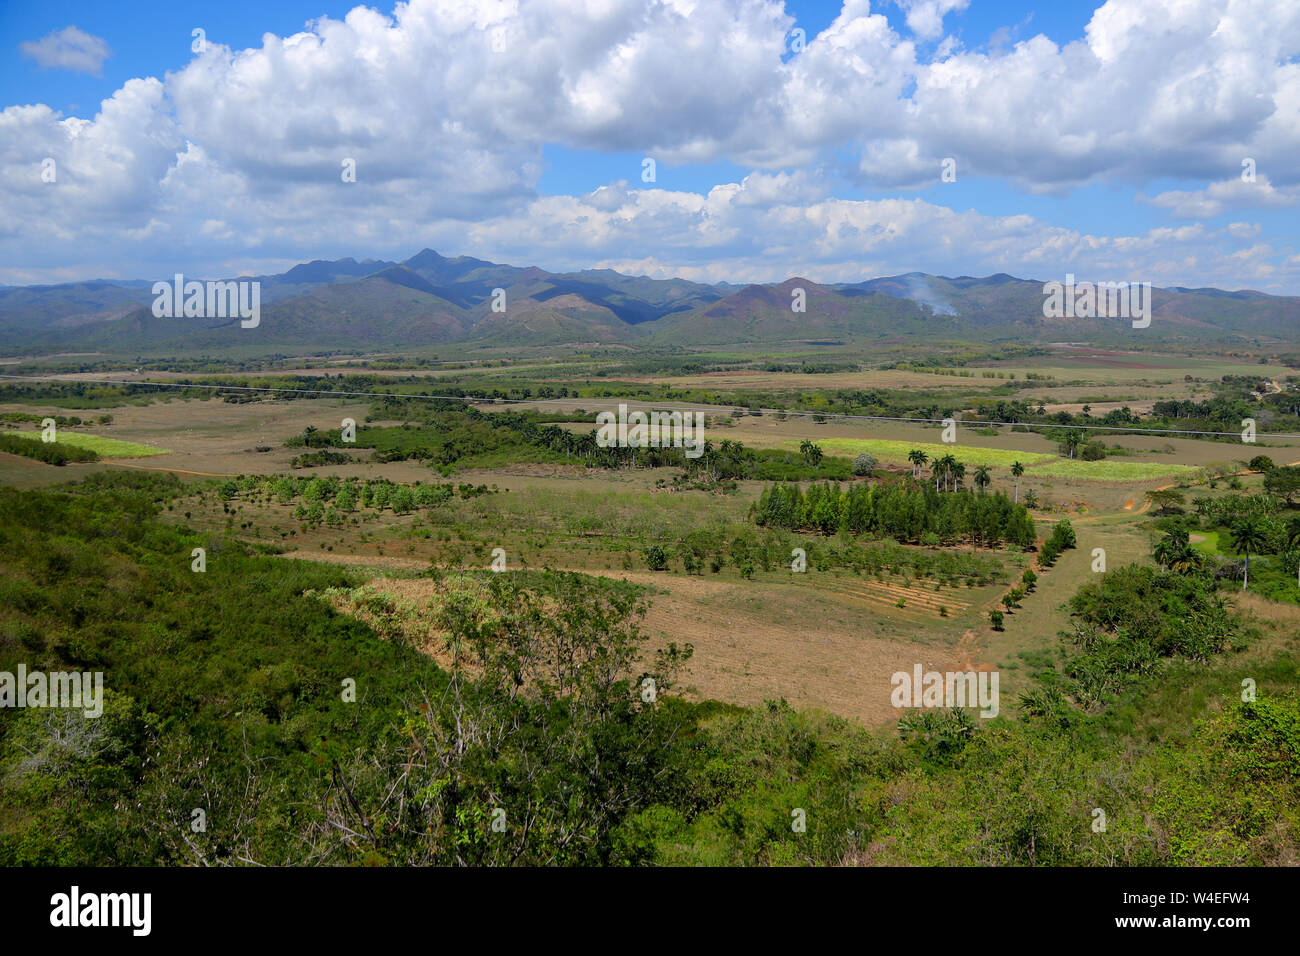 View from the Mirador de la Loma del Puerto in the Valle de los Ingenios in Cuba Stock Photo